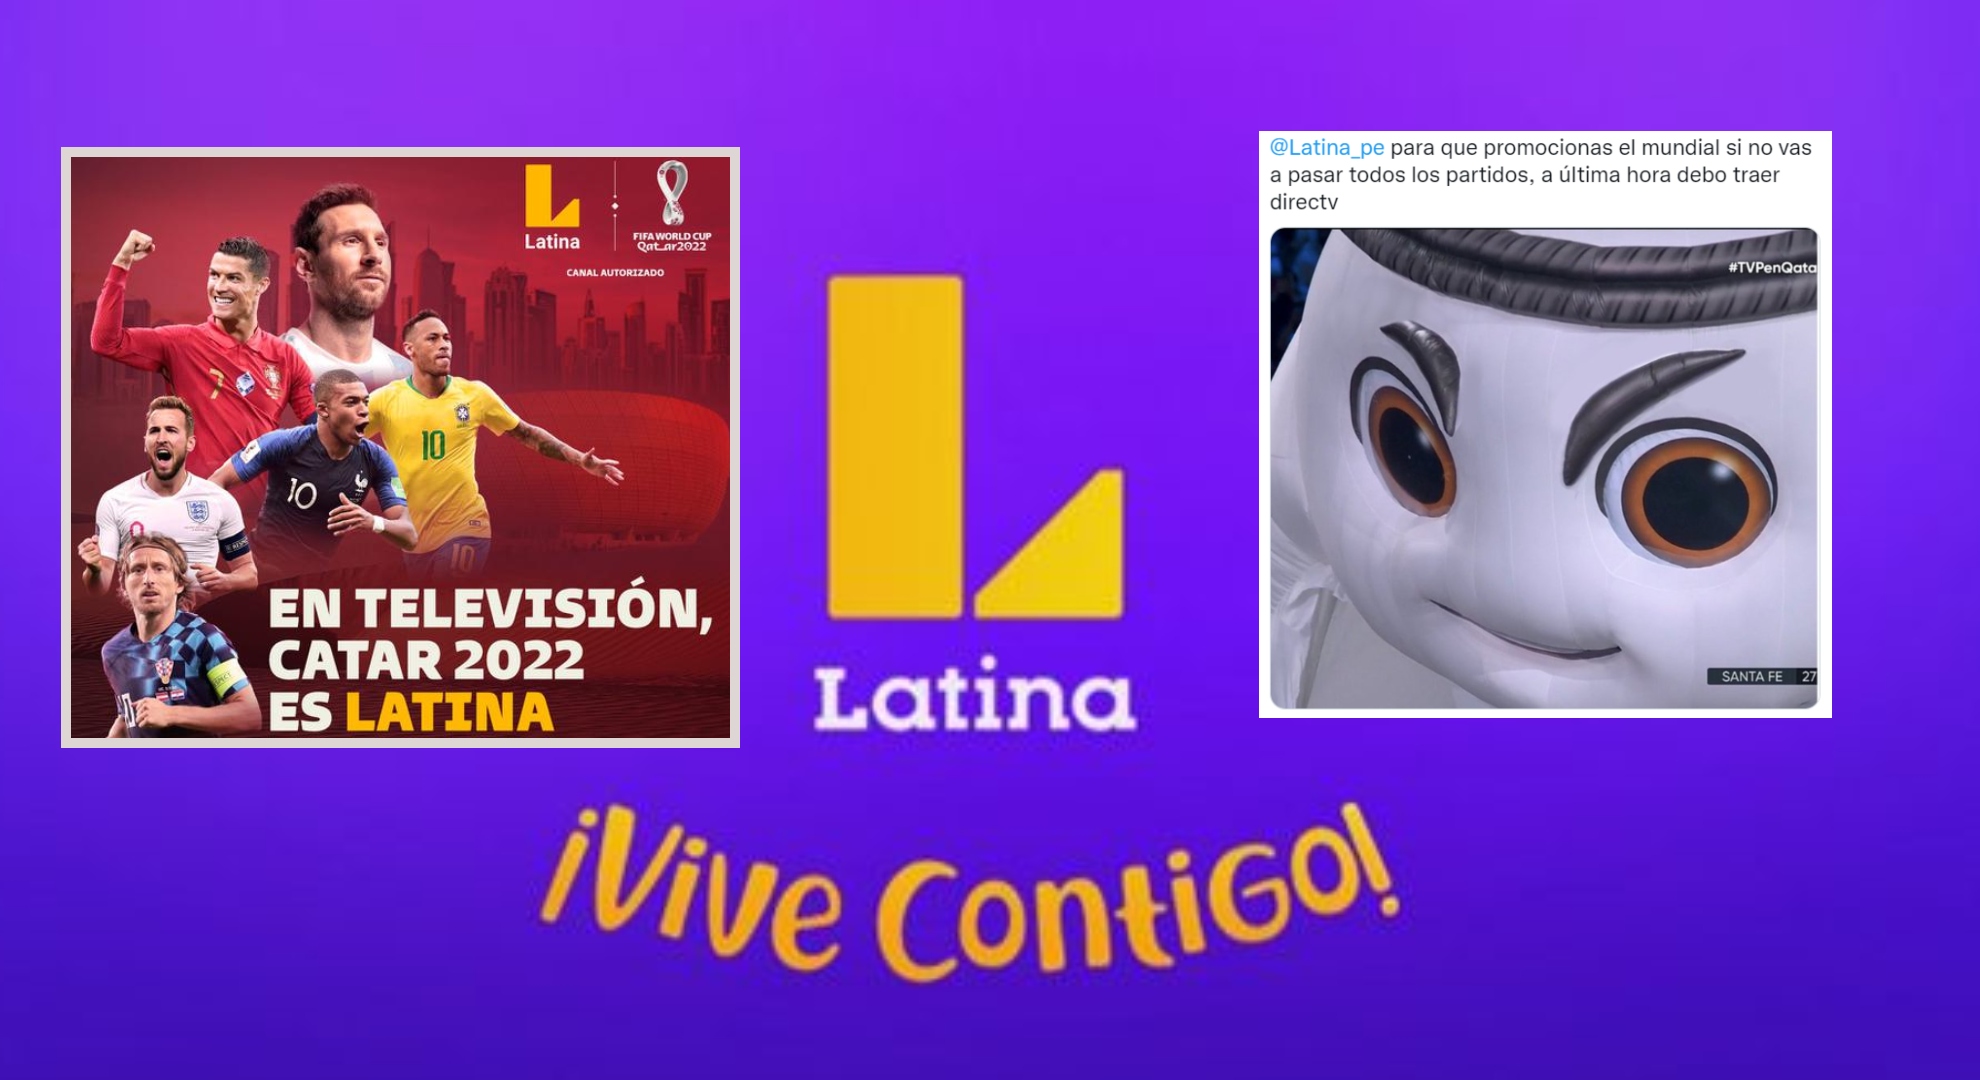 Los usuarios criticaron a Latina por no pasar la totalidad de partidos del Mundial.